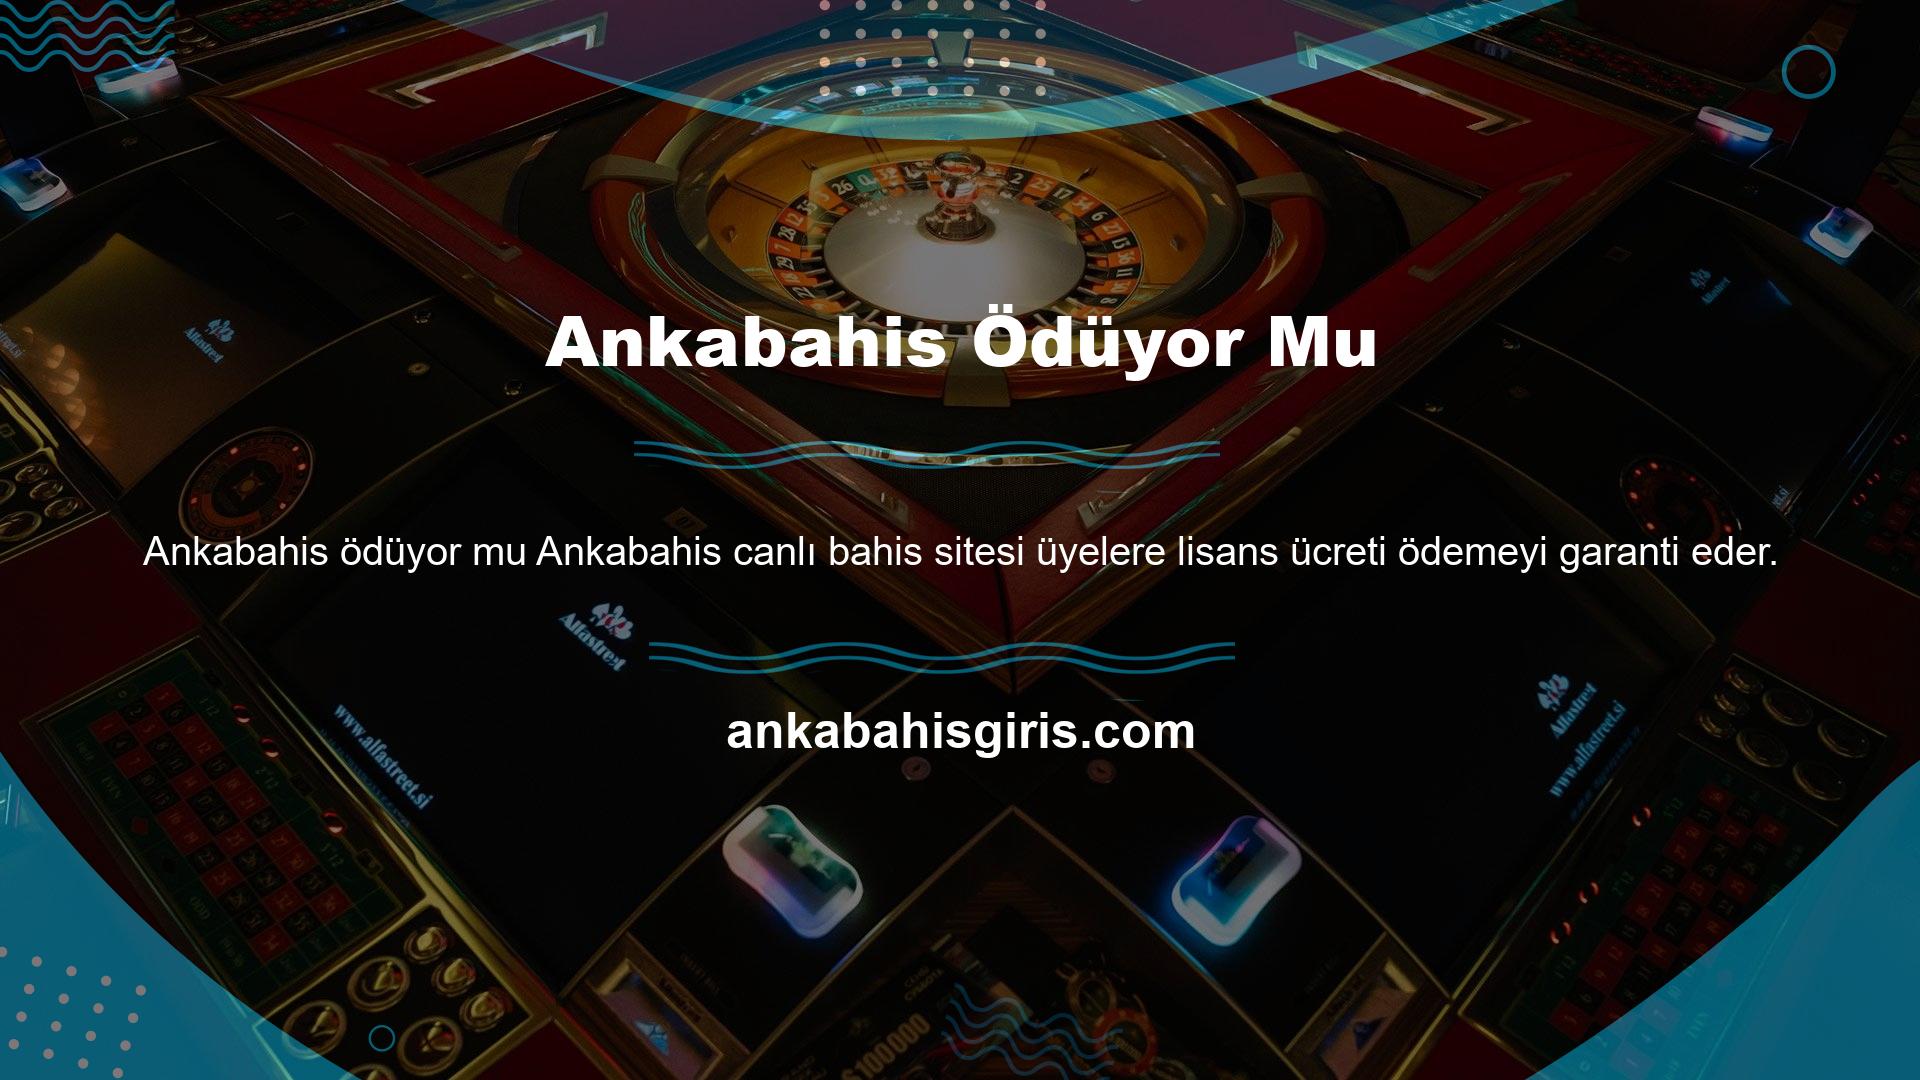 Şartlar ve koşullara göre Ankabahis, Türkiye'deki en büyük oyun arşivinden sorumludur